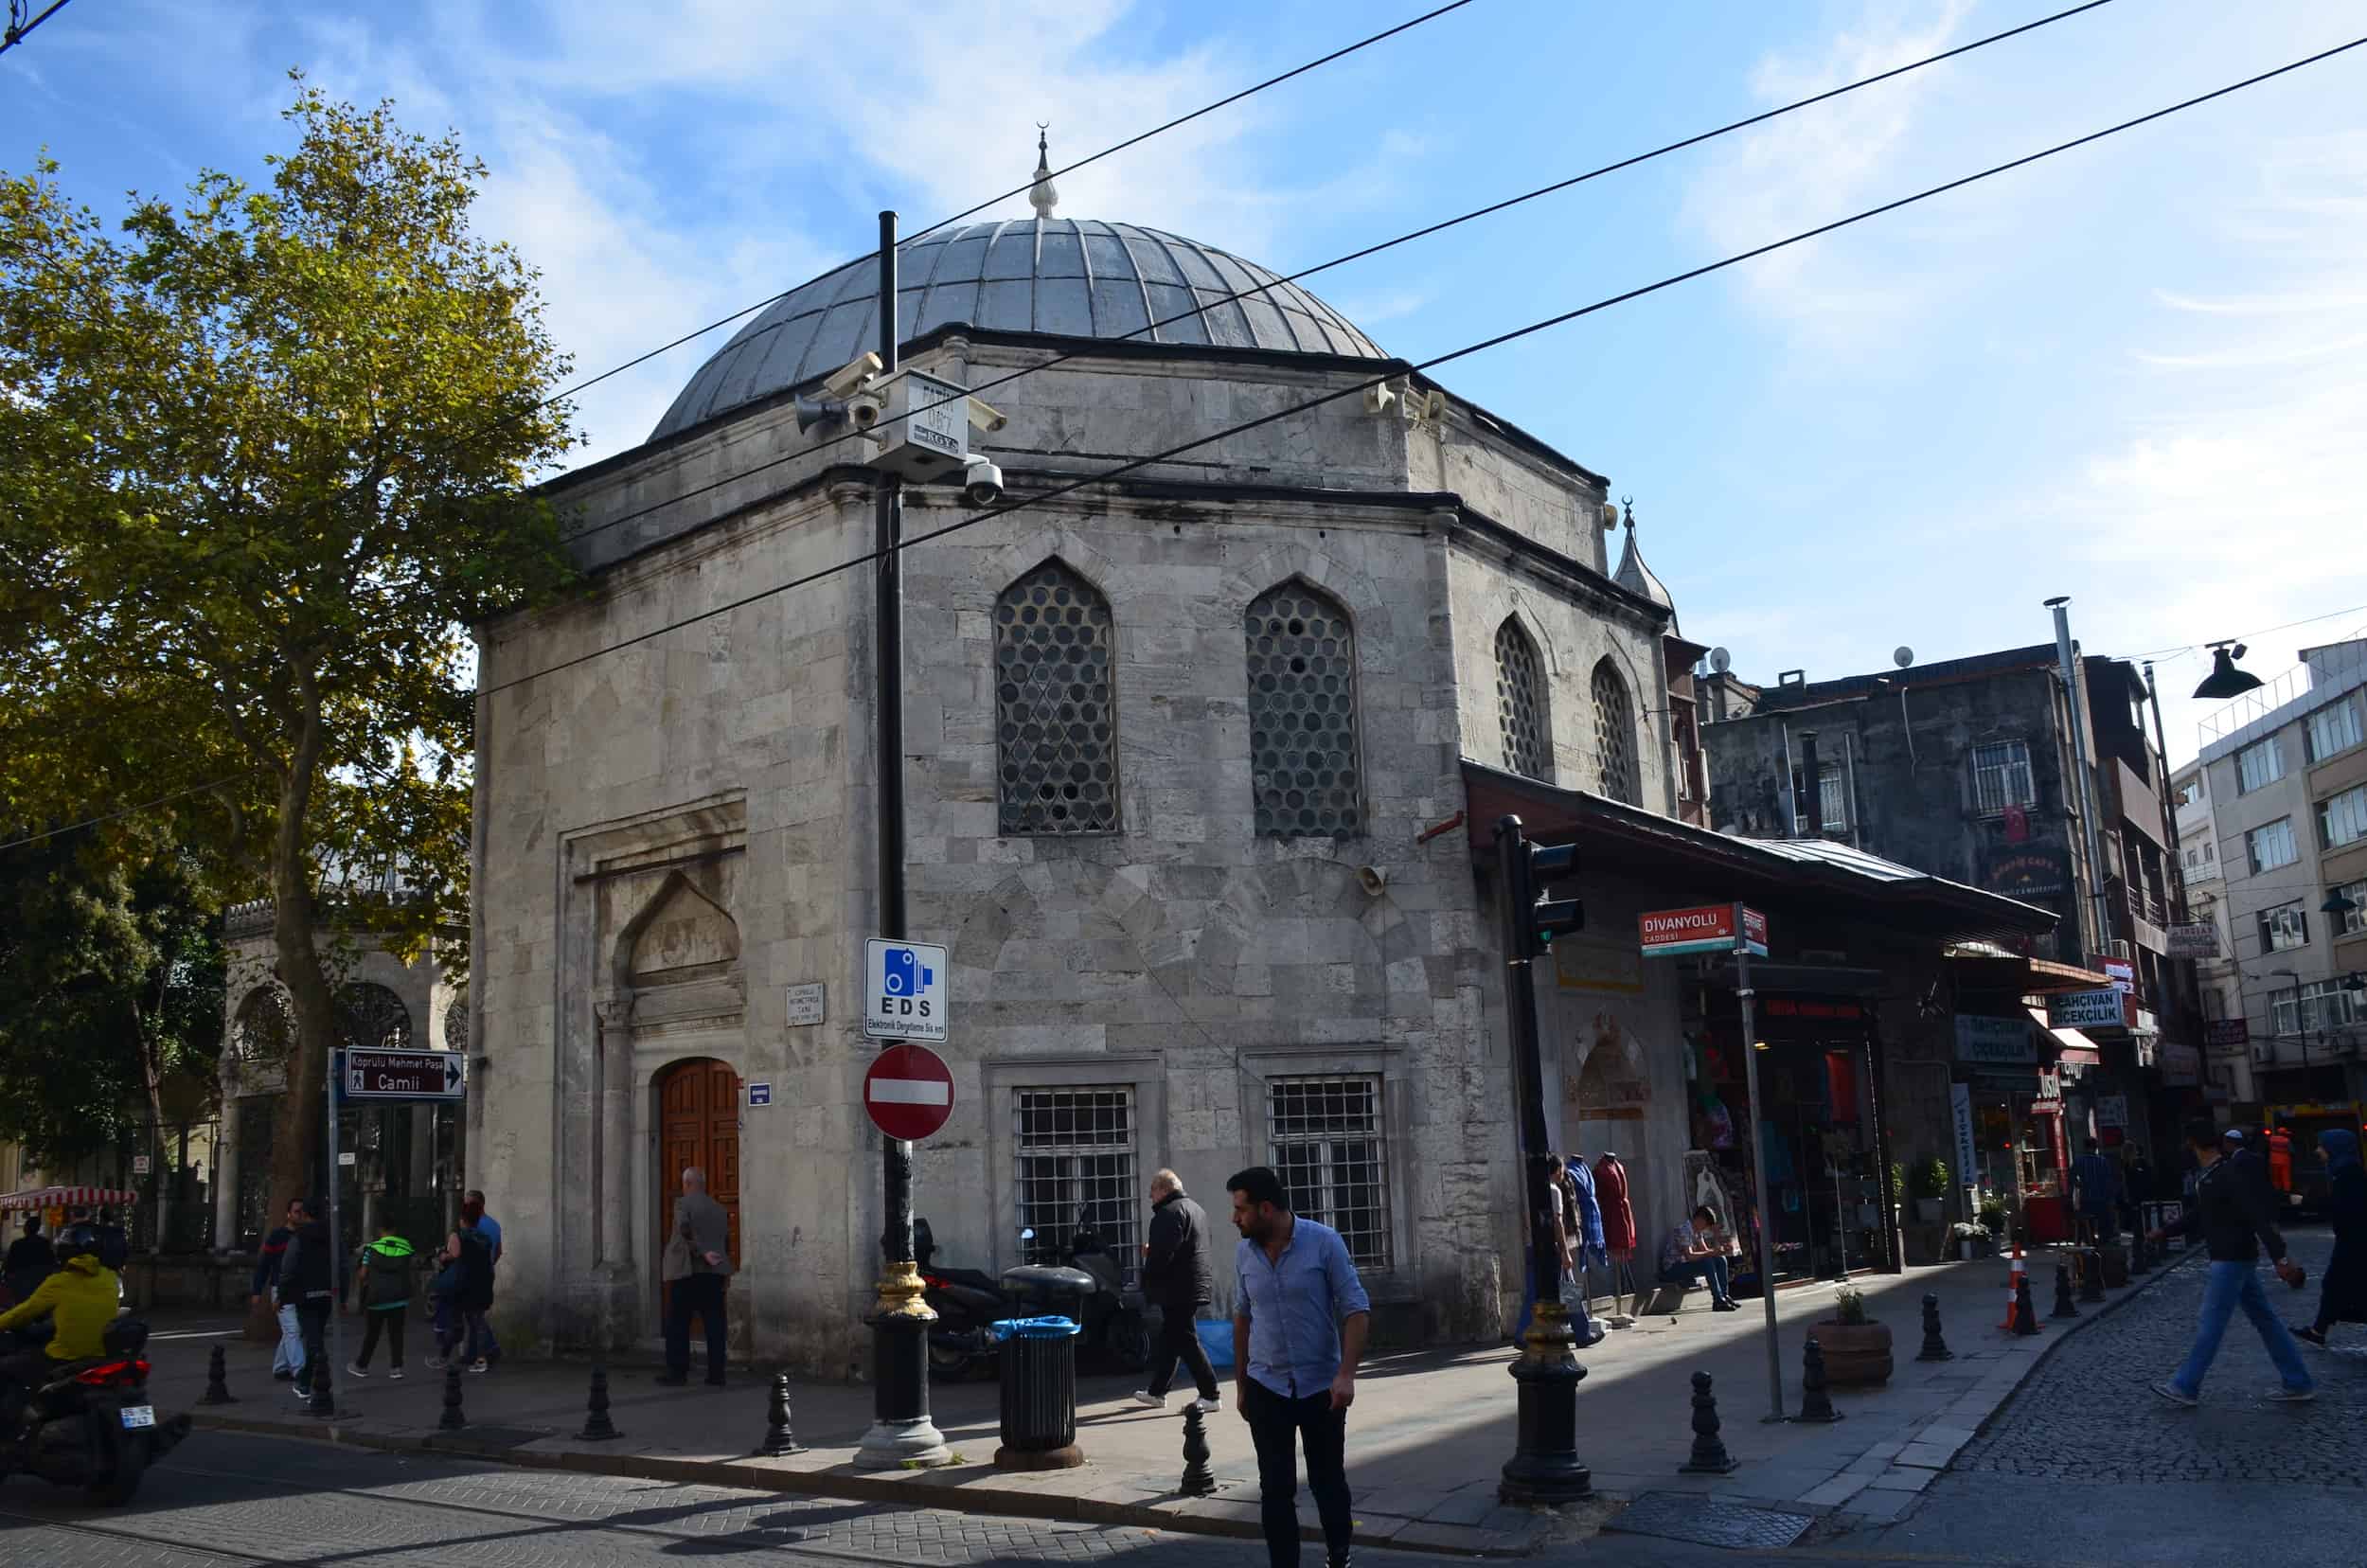 Köprülü Mehmed Pasha Mosque in Çemberlitaş, Istanbul, Turkey